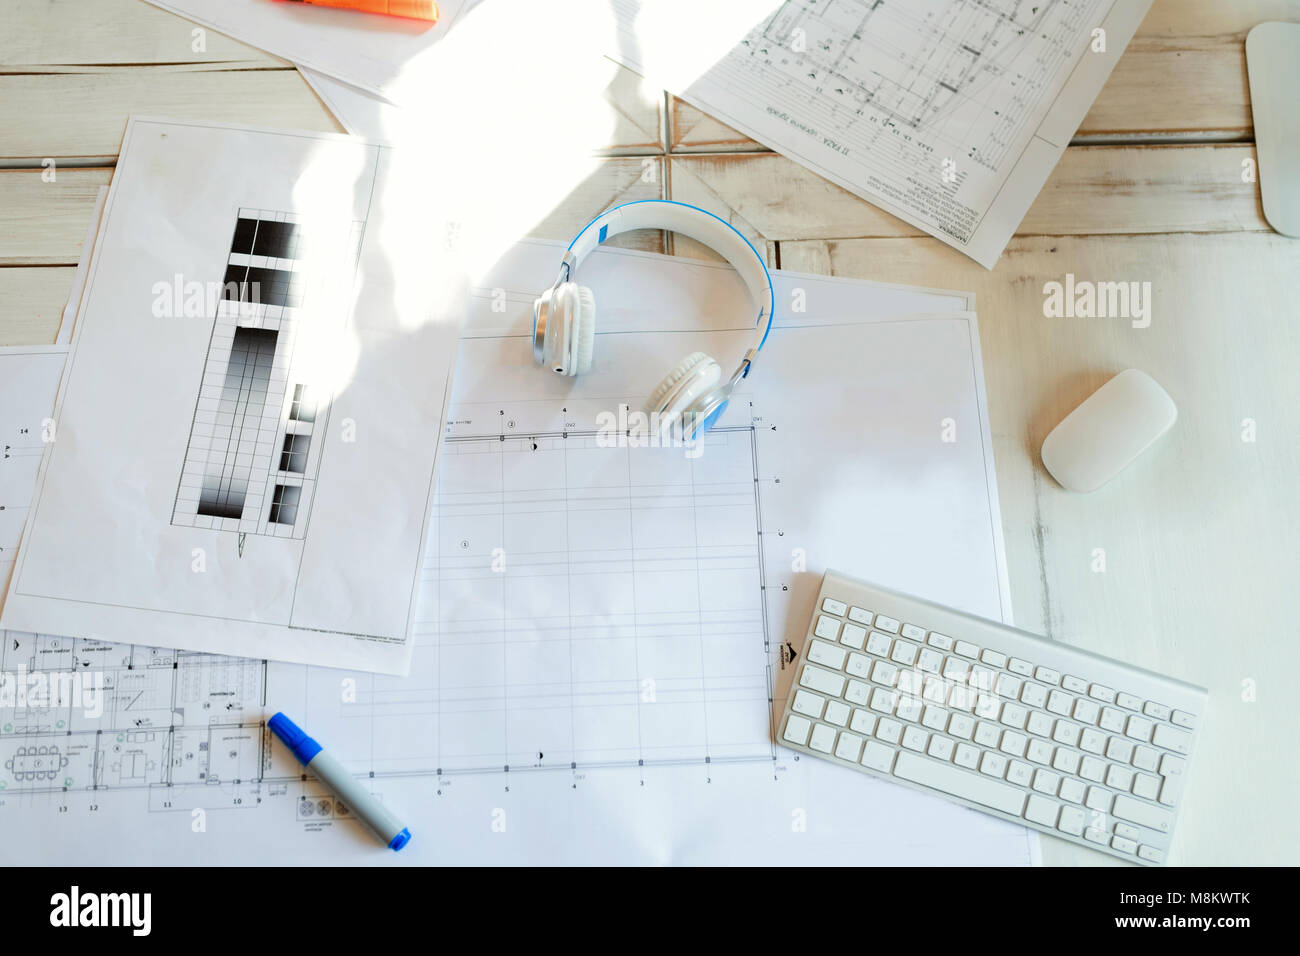 Architektonisches Projekt, Blueprints, Blaupause rollt auf hölzernen Schreibtisch Tisch Stockfoto